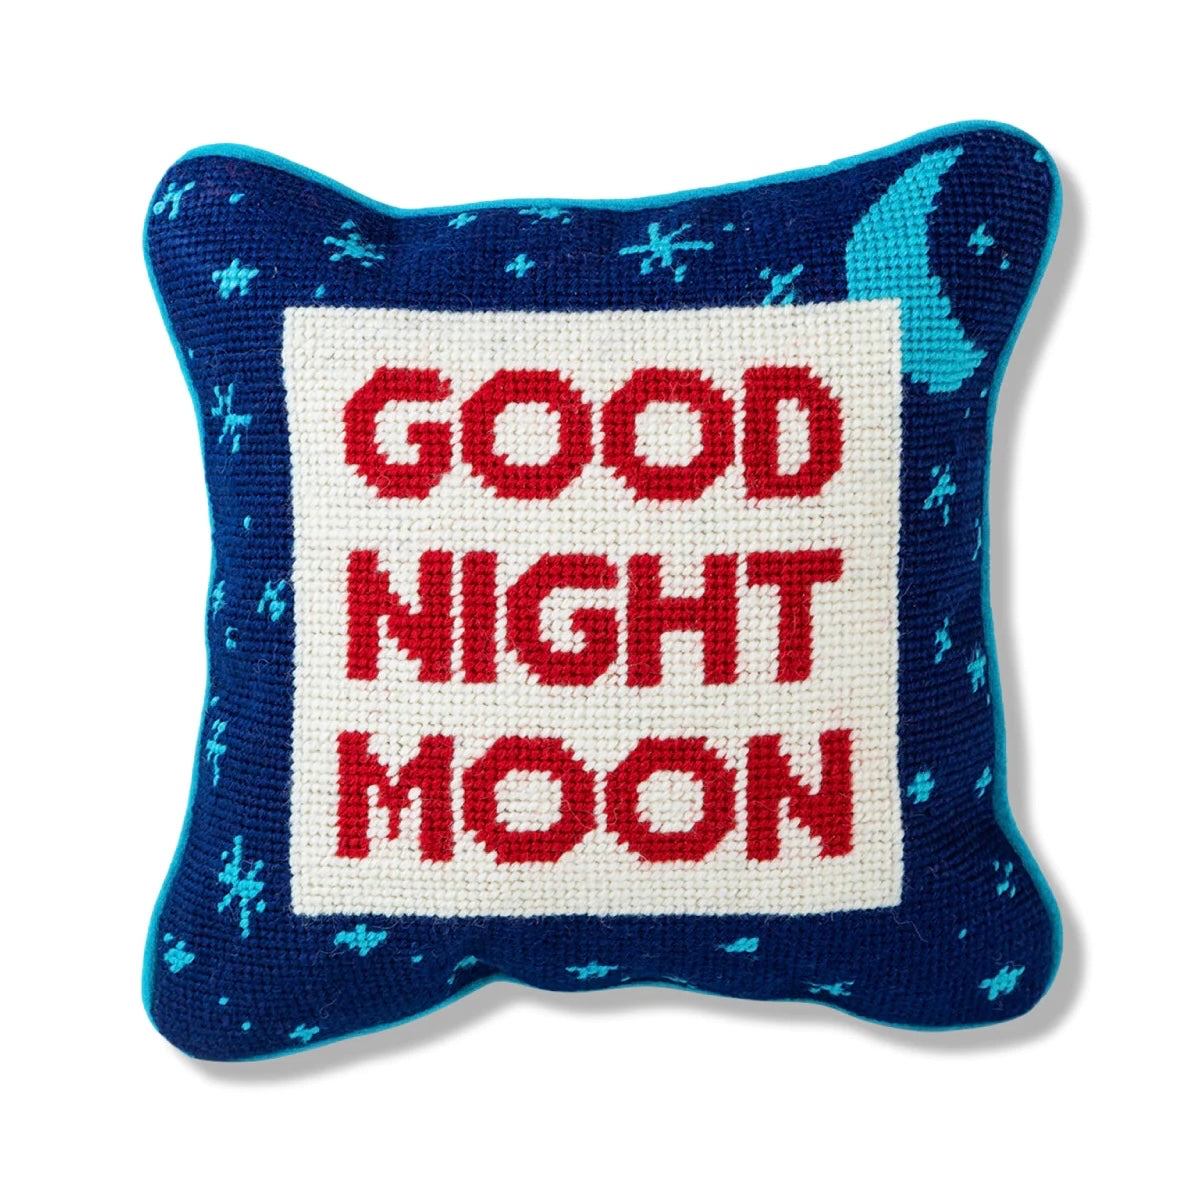 Furbish: Good Night Moon Needlepoint Pillowea